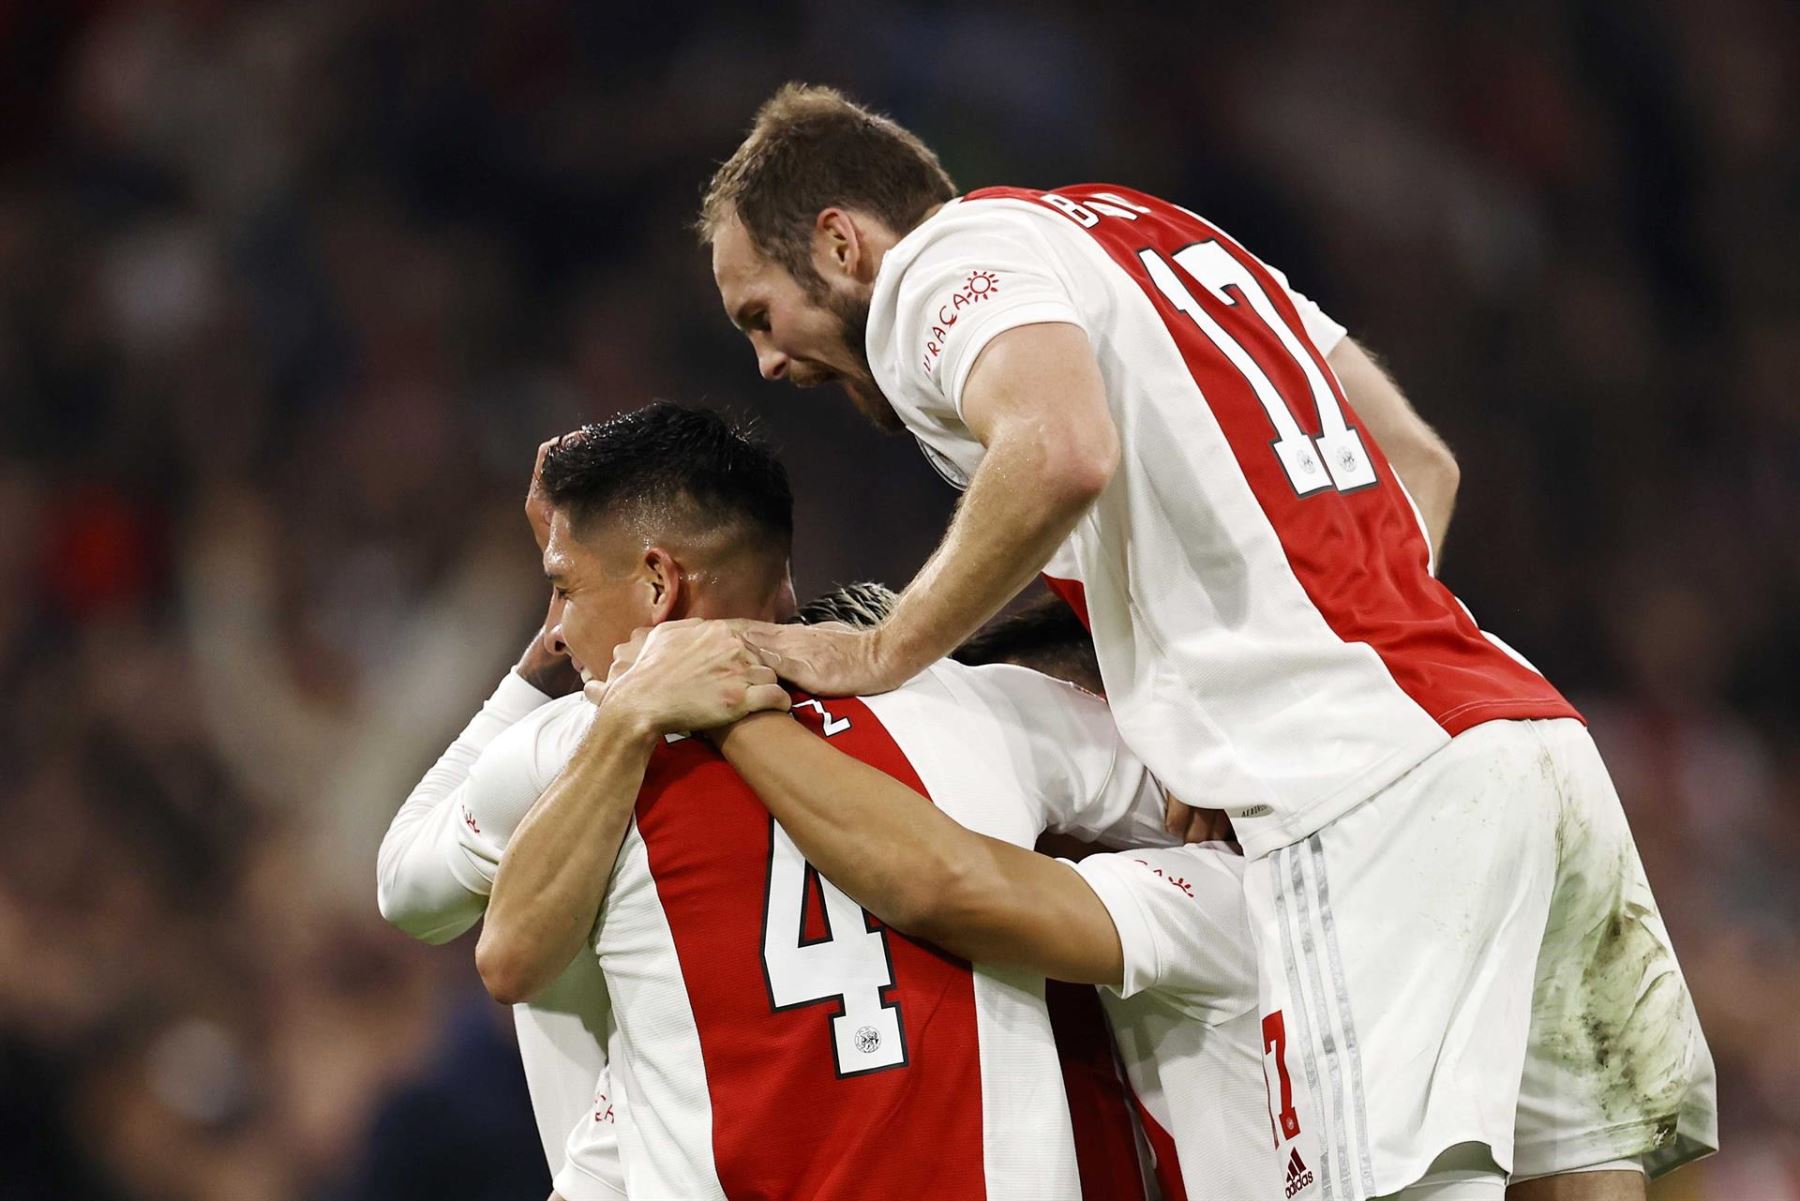 Habrá revancha: Ajax y Borussia se volverán a enfrentar en la siguiente fecha de Liga de Campeones. Foto: Efe.